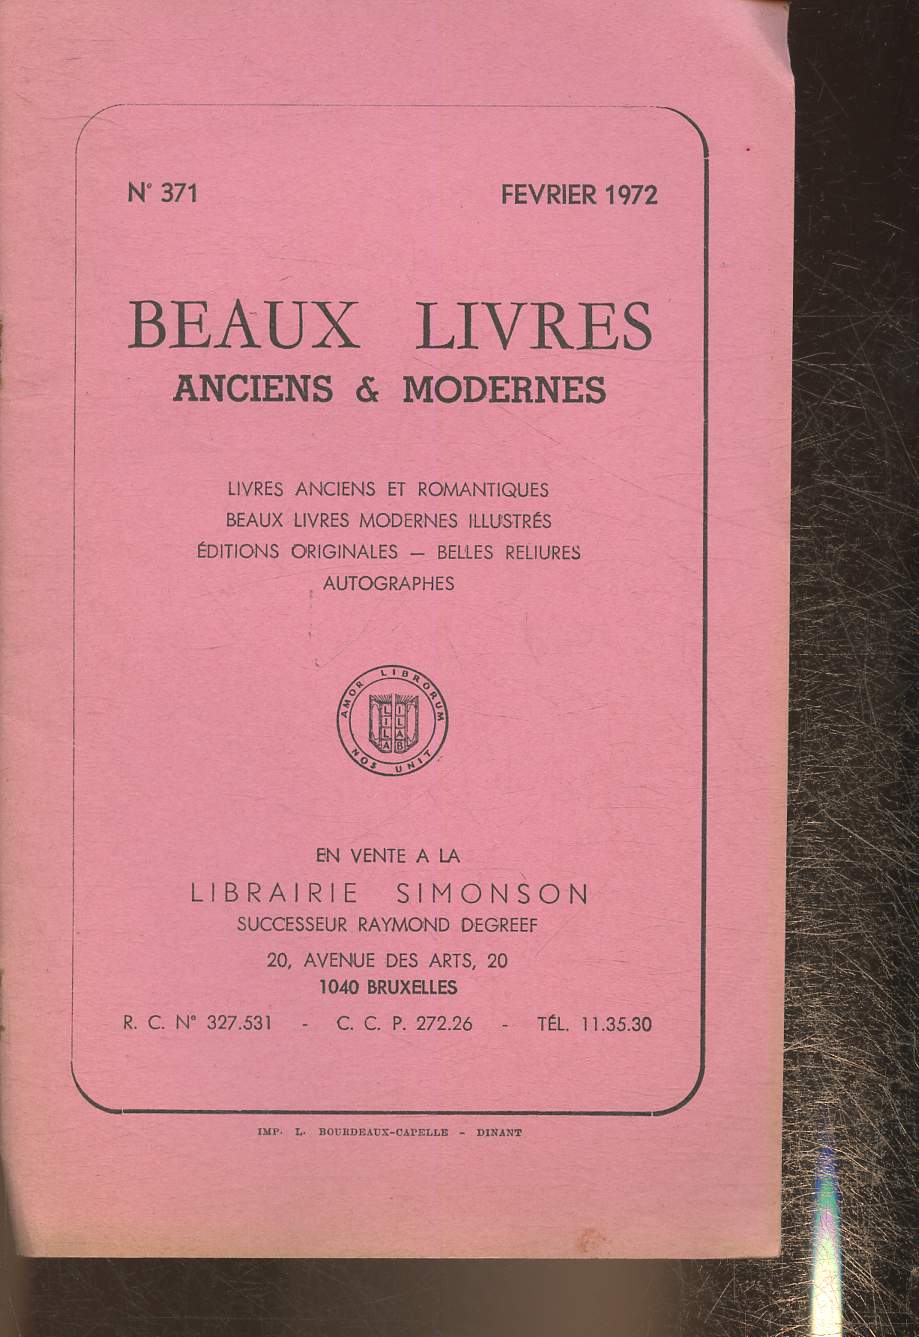 Catalogue de beaux livres anciens et modernes- Librairie Simonson- n371- Fvrier 1972